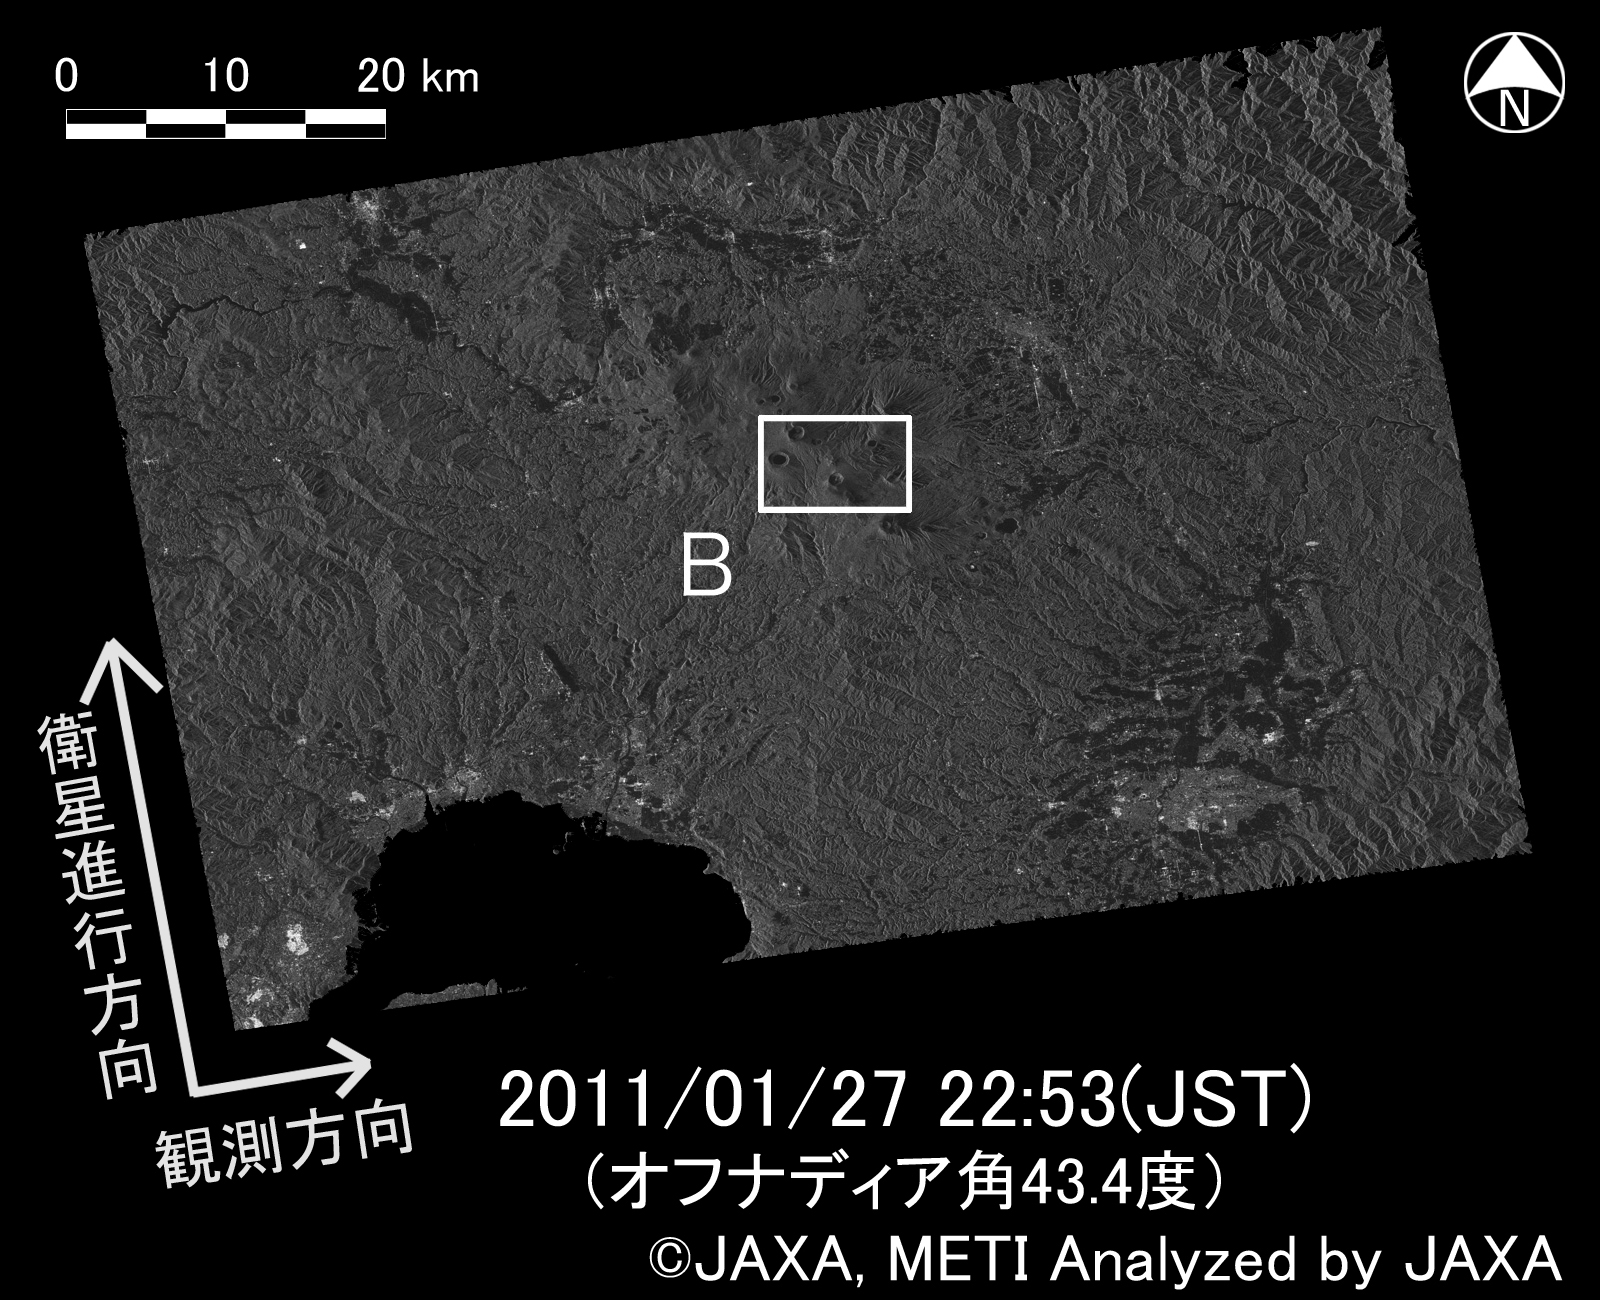 図2右上:2011年1月27日(噴火後)にPALSARで取得された新燃岳周辺の画像